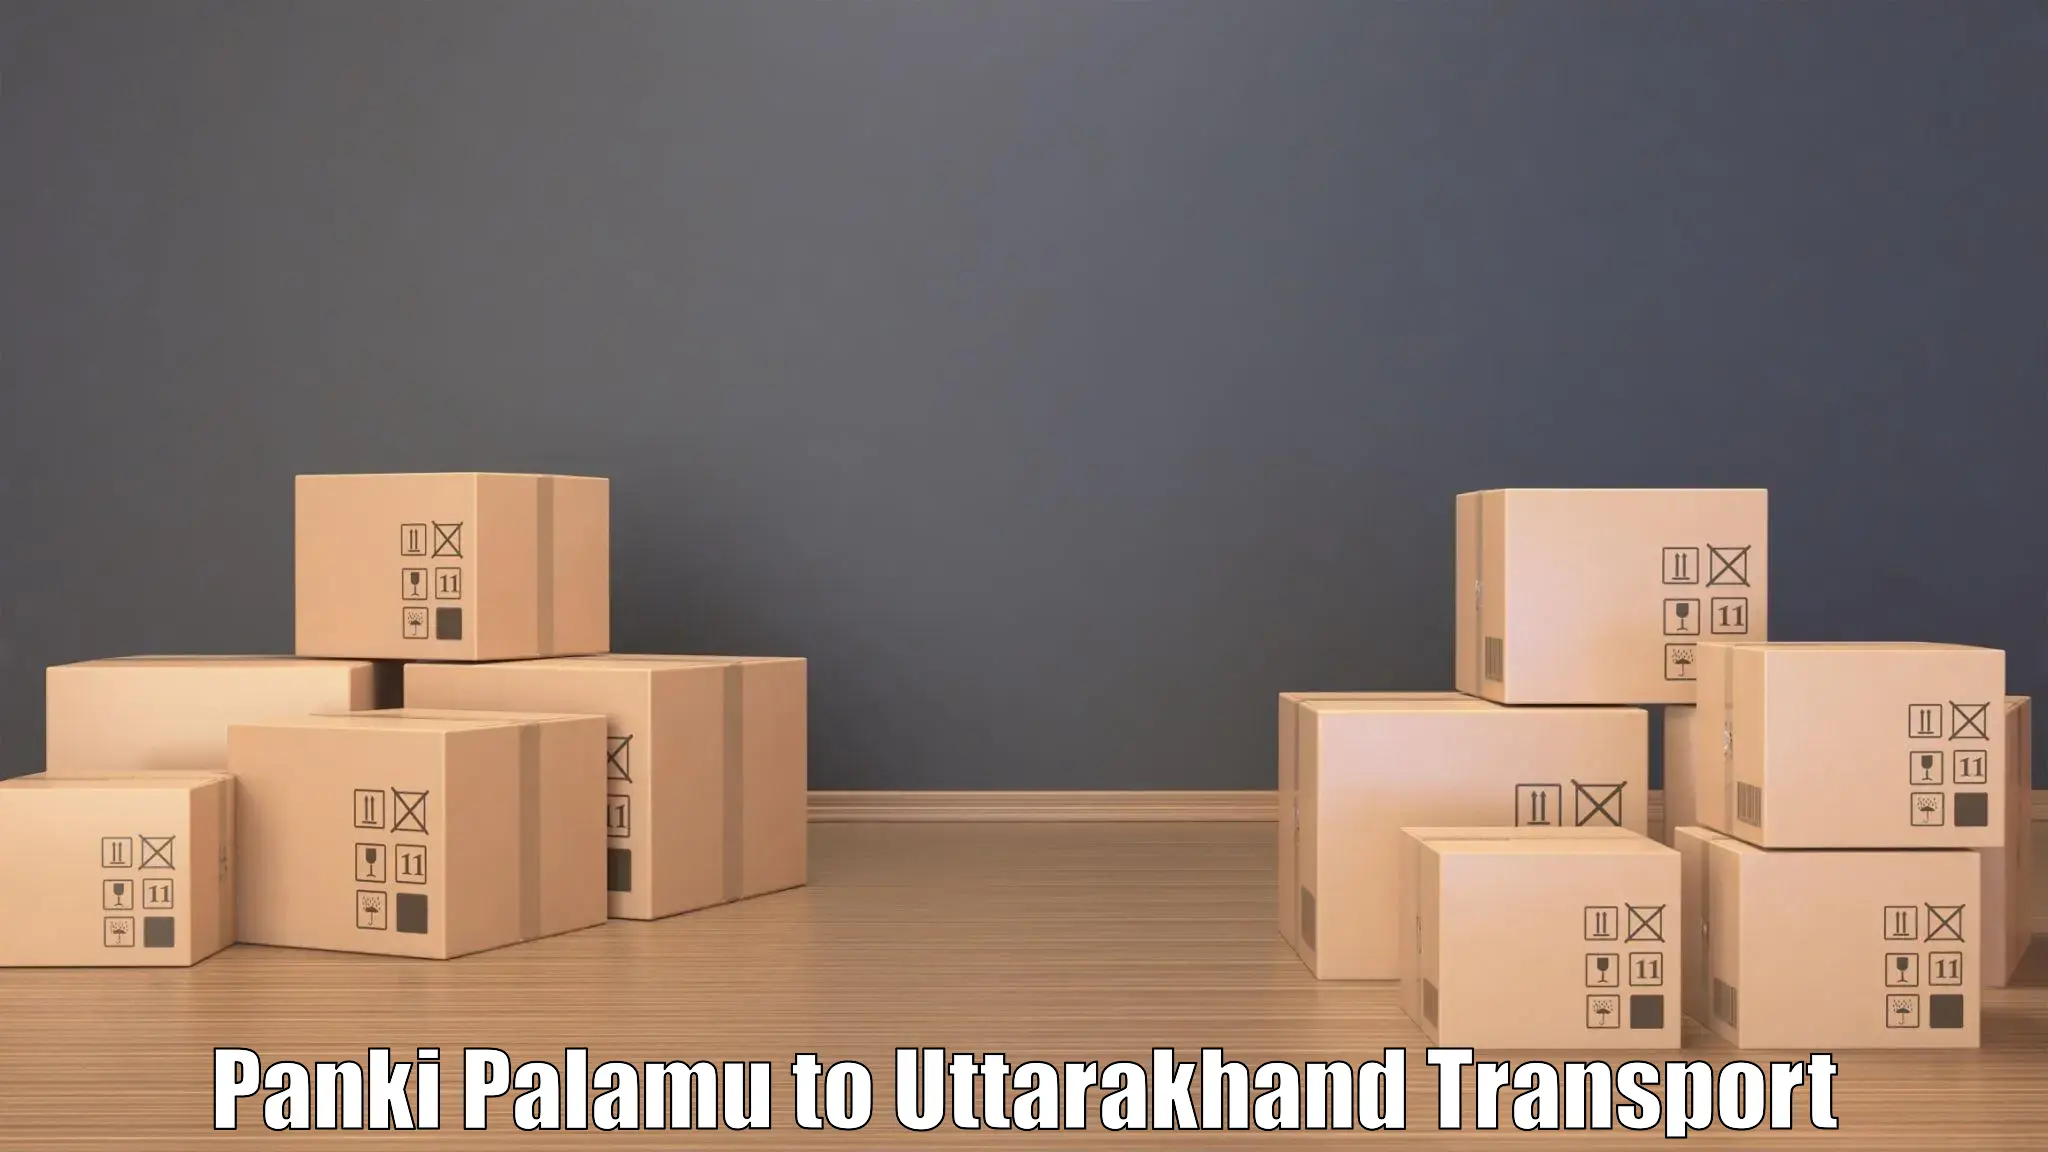 Road transport online services Panki Palamu to Ramnagar